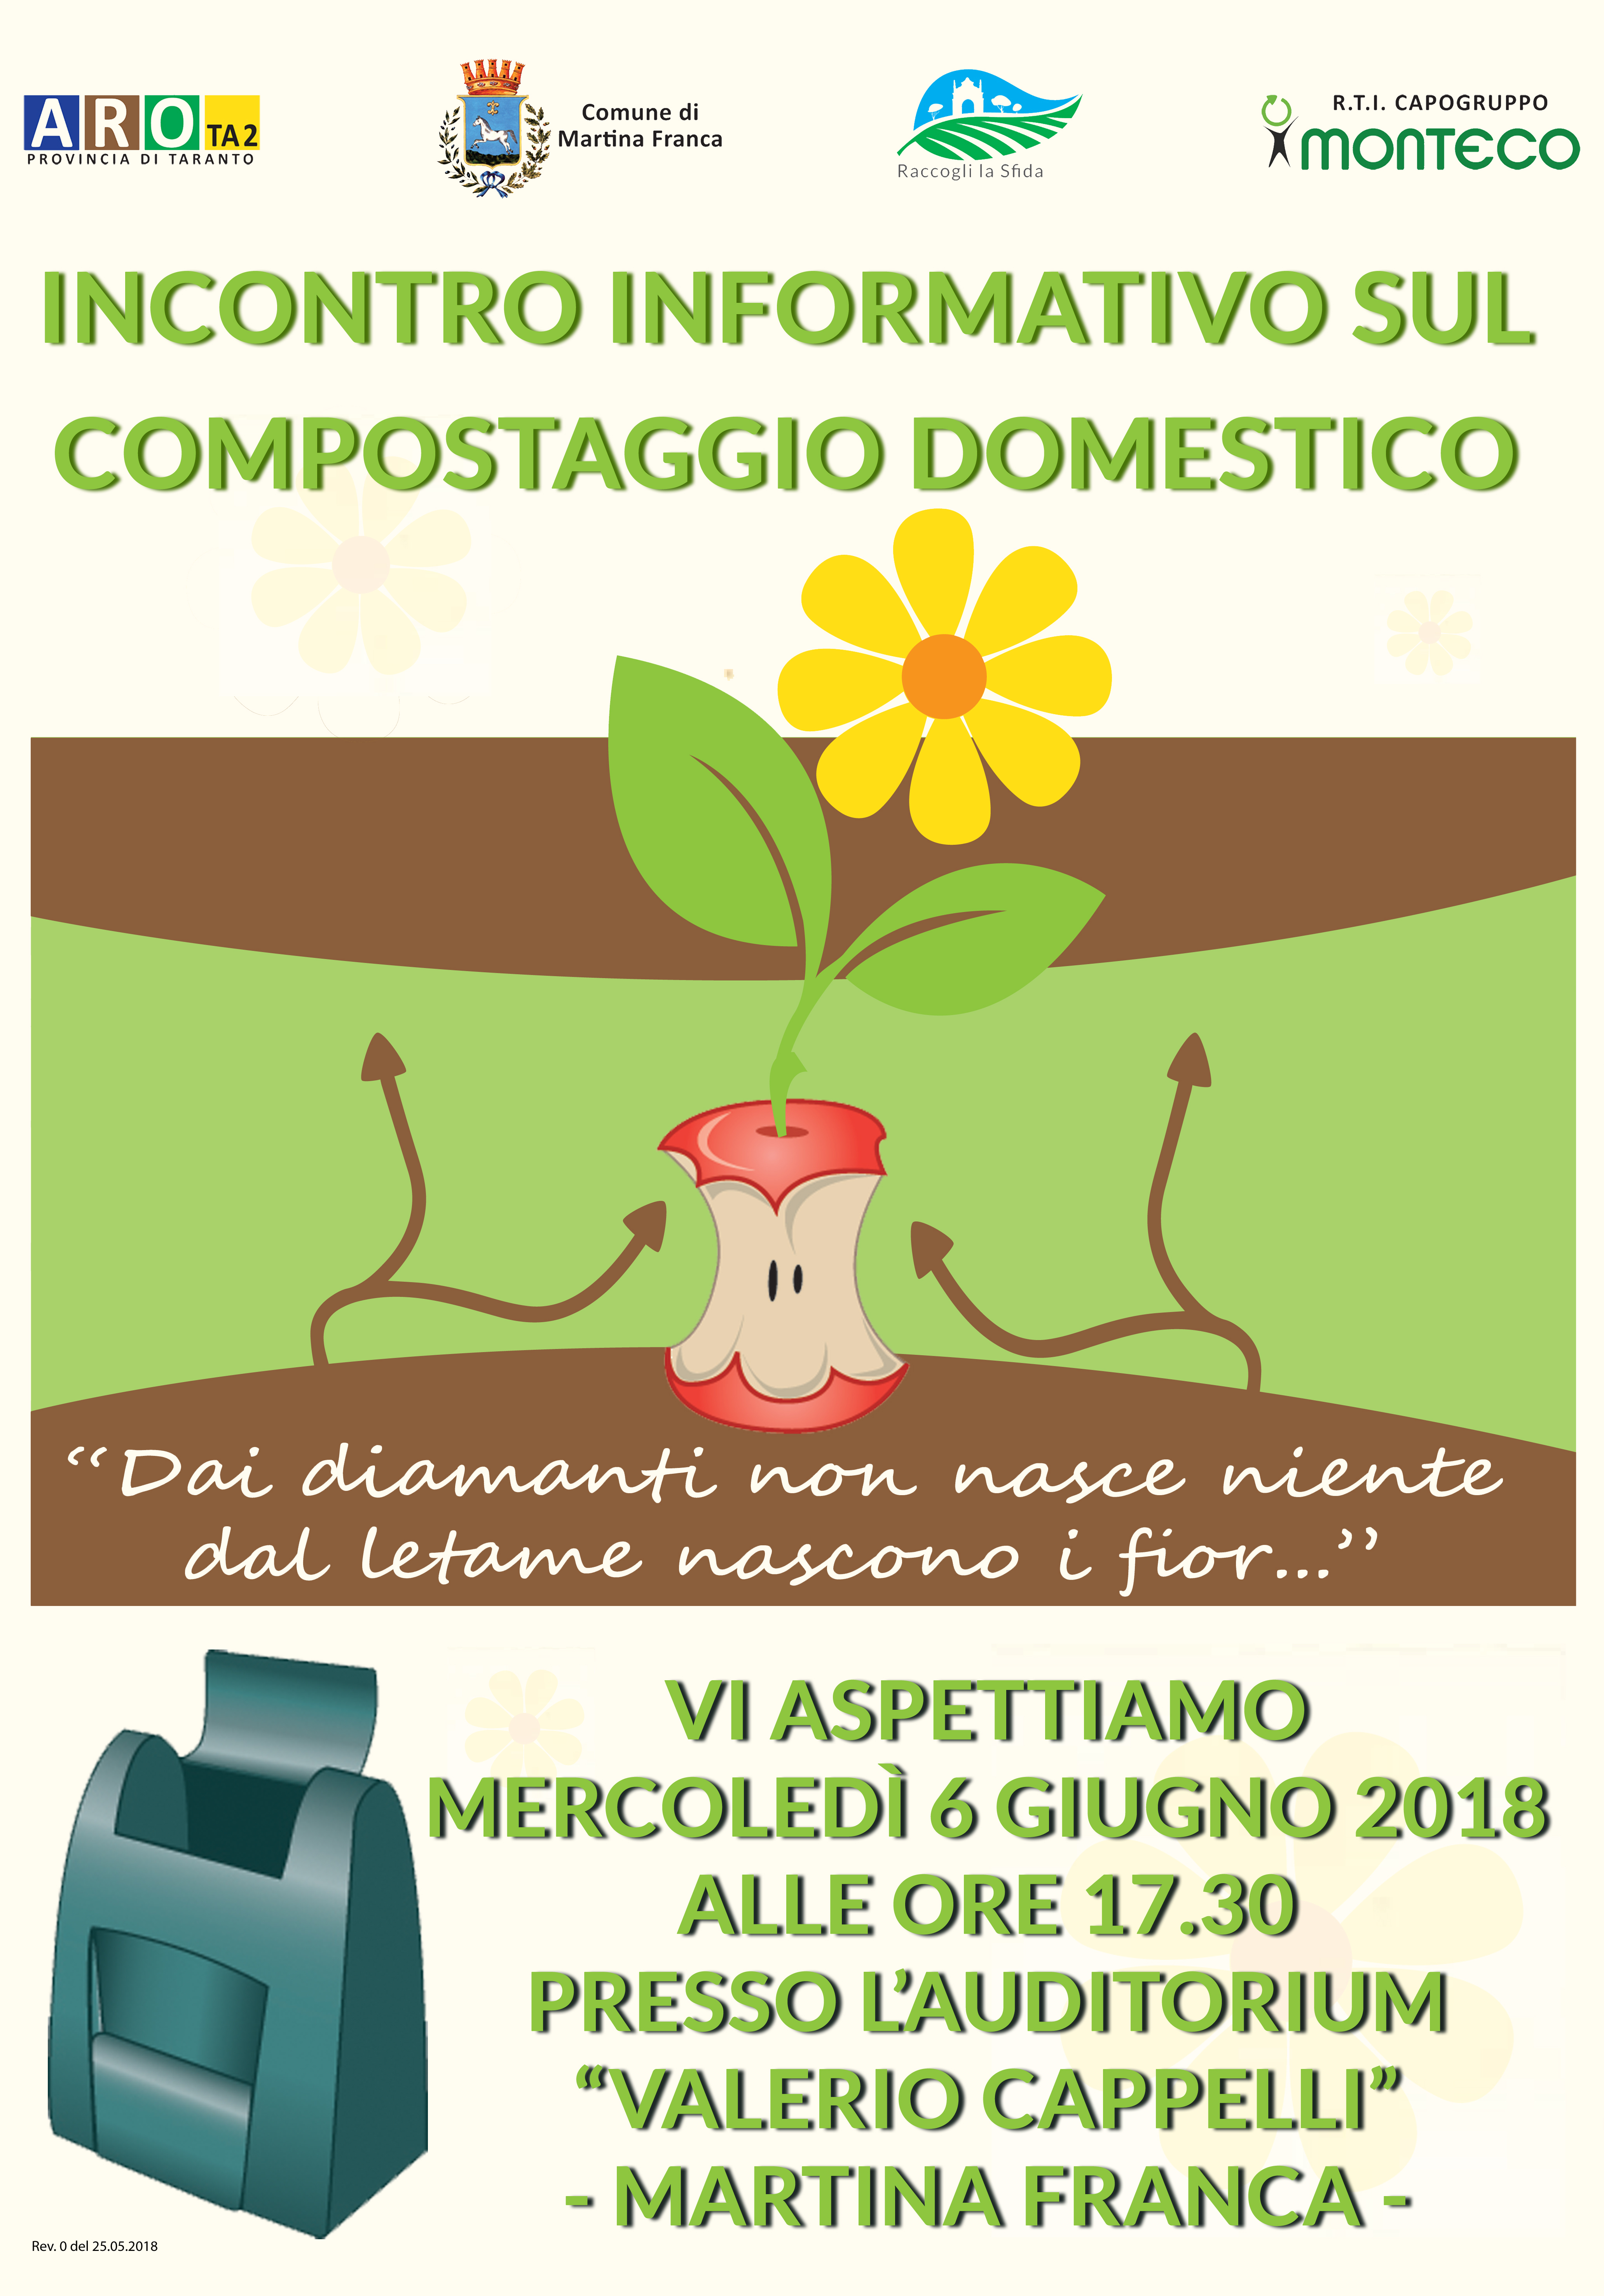 Martina Franca - Incontro informativo sul compostaggio domestico